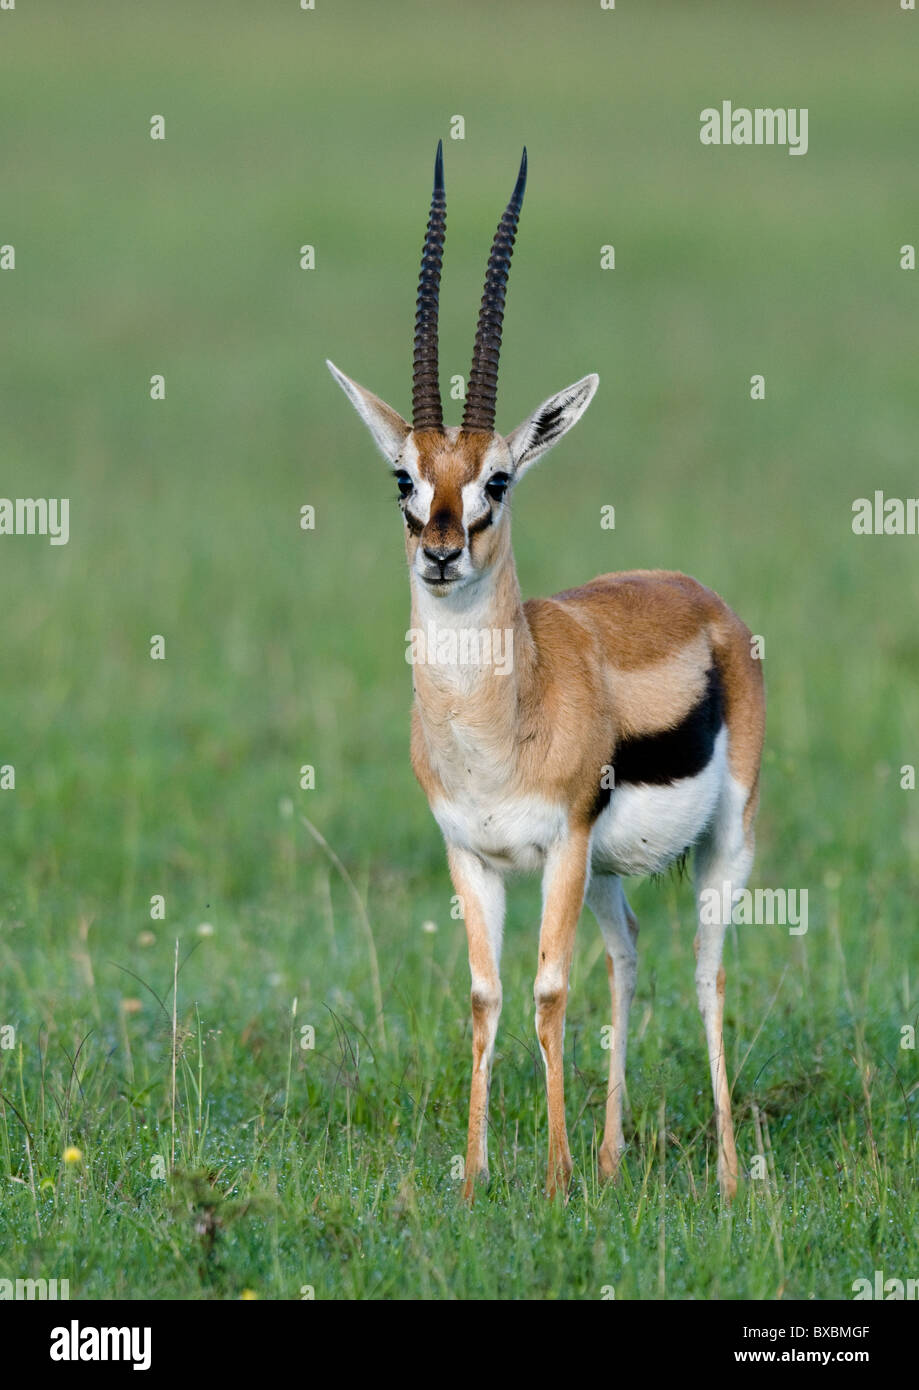 Thompson's gazelle Stock Photo